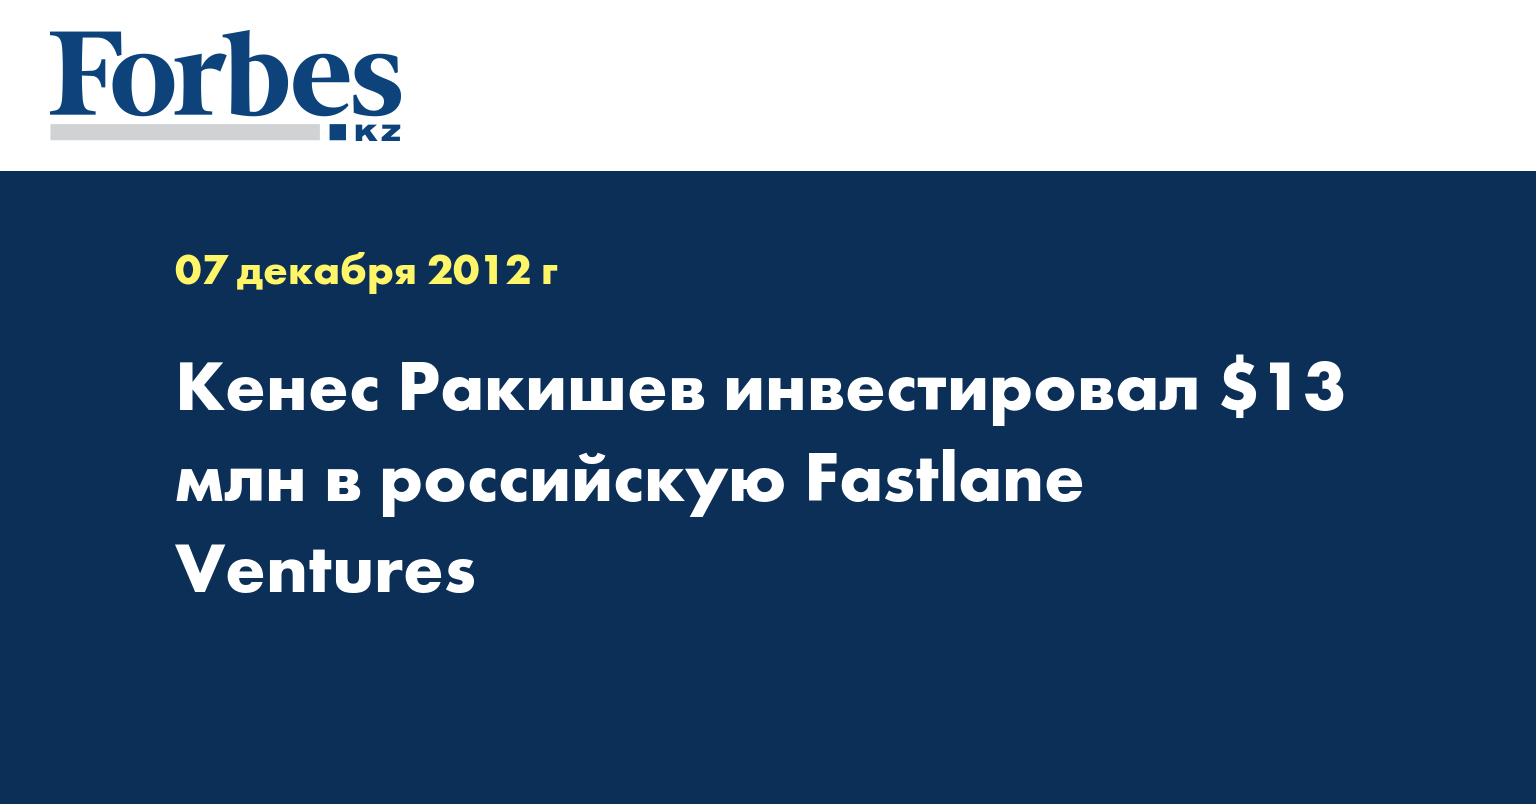 Кенес Ракишев инвестировал $13 млн в российскую Fastlane Ventures